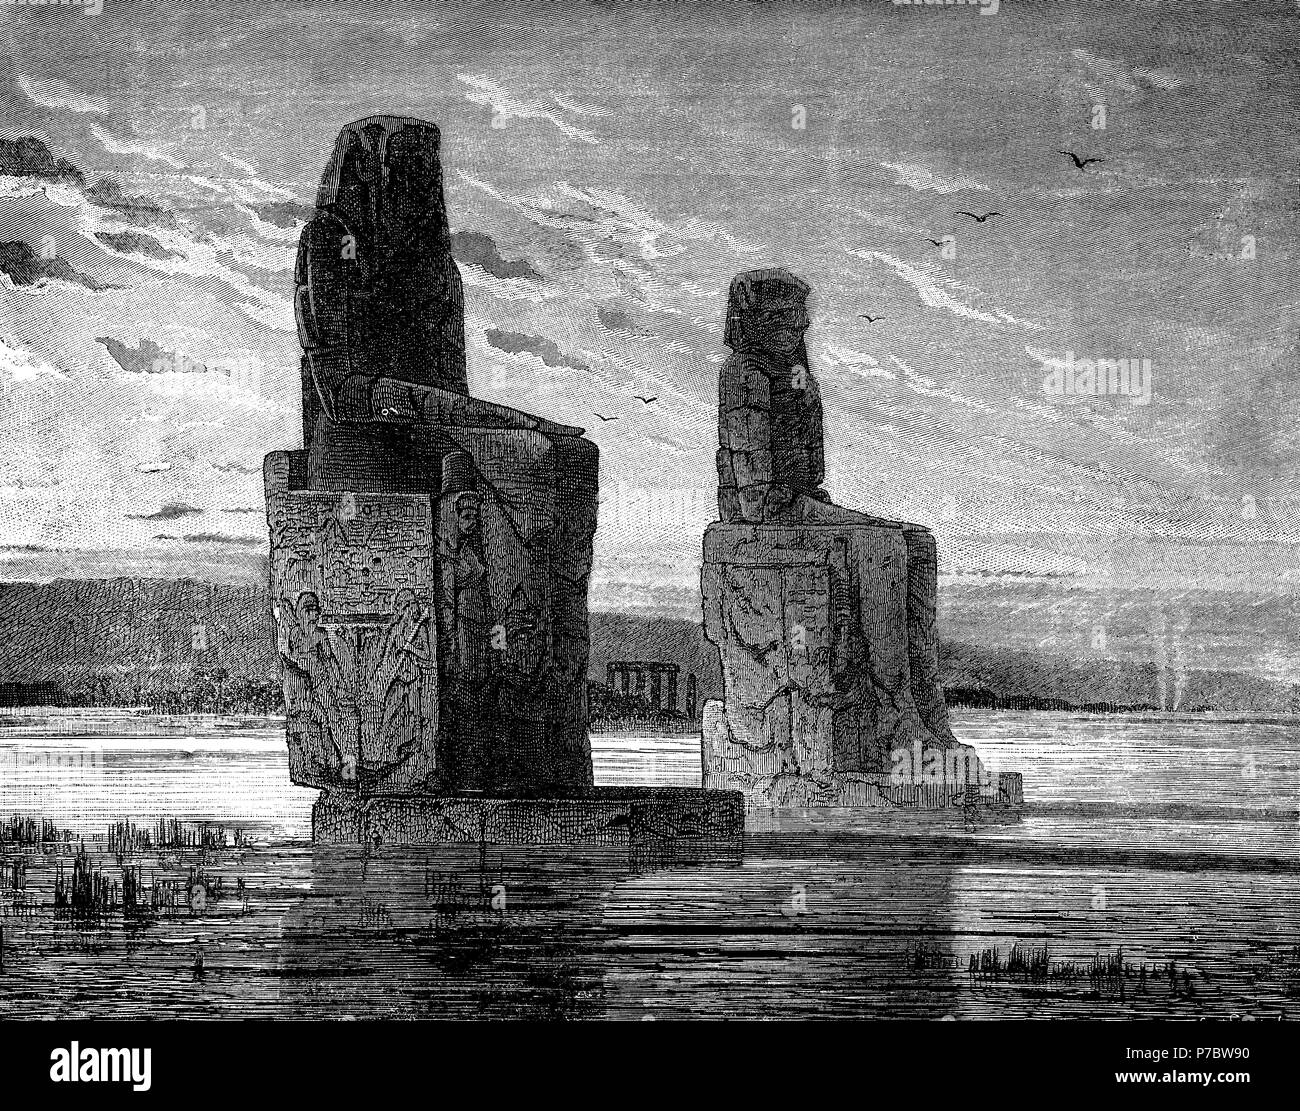 Egipto. Los colosos de Memnon durante una inundación del río Nilo. Grabado de 1880. Stock Photo